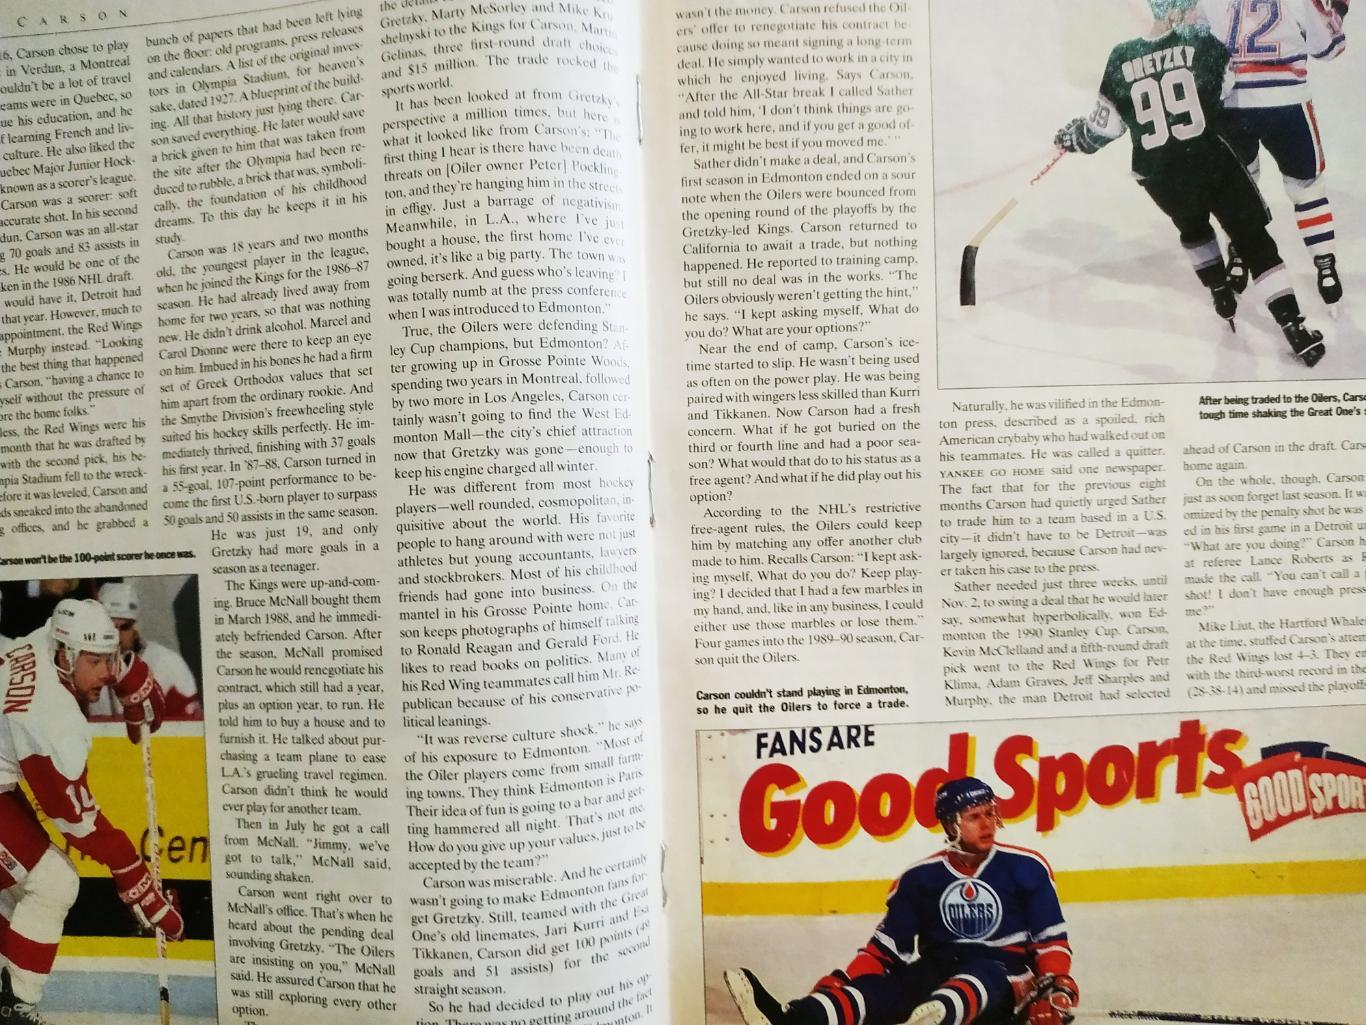 ХОККЕЙ ЕЖЕНЕДЕЛЬНИК СПОРТ ИЛЛЮСТРЕЙТЕД НХЛ 24 DEC 1990 NHL SPORTS ILLUSTRATED 3